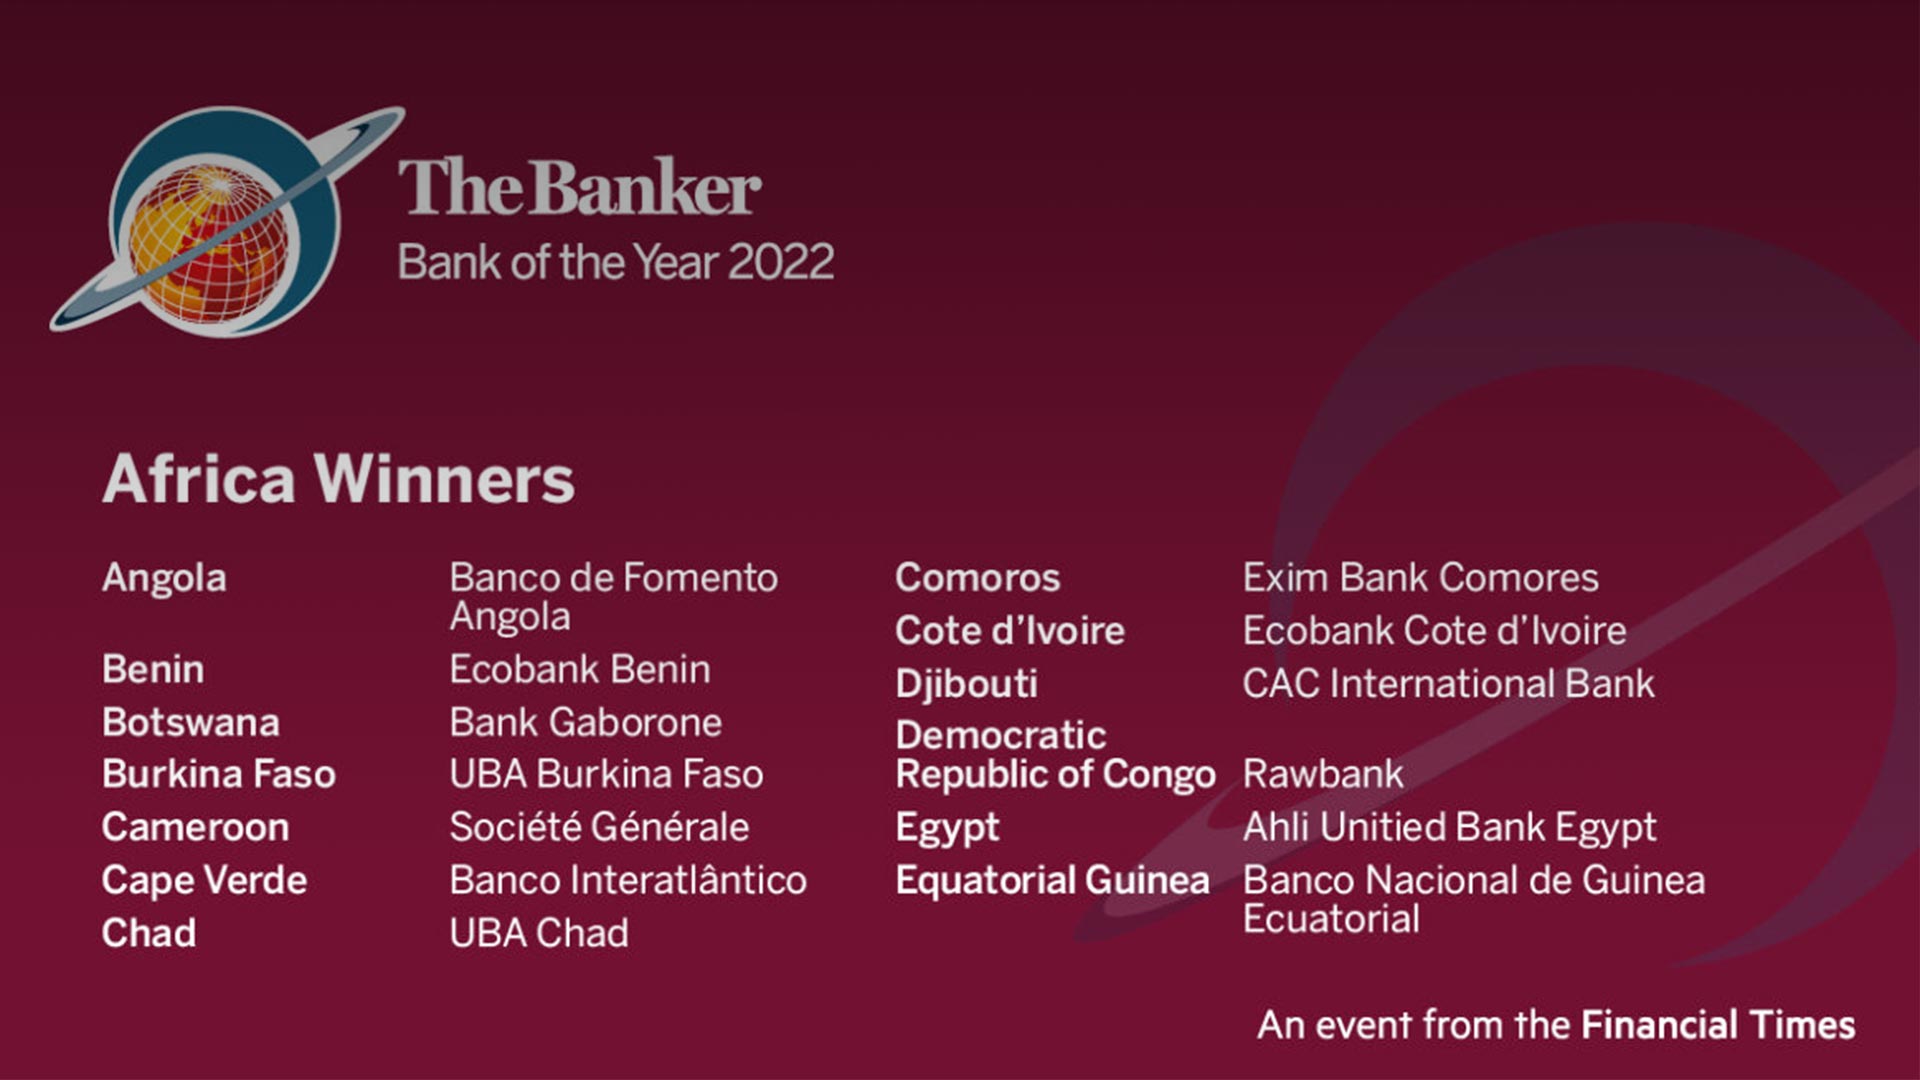 The Banker galardona a BANGE como mejor banco en Guinea Ecuatorial del año 2022